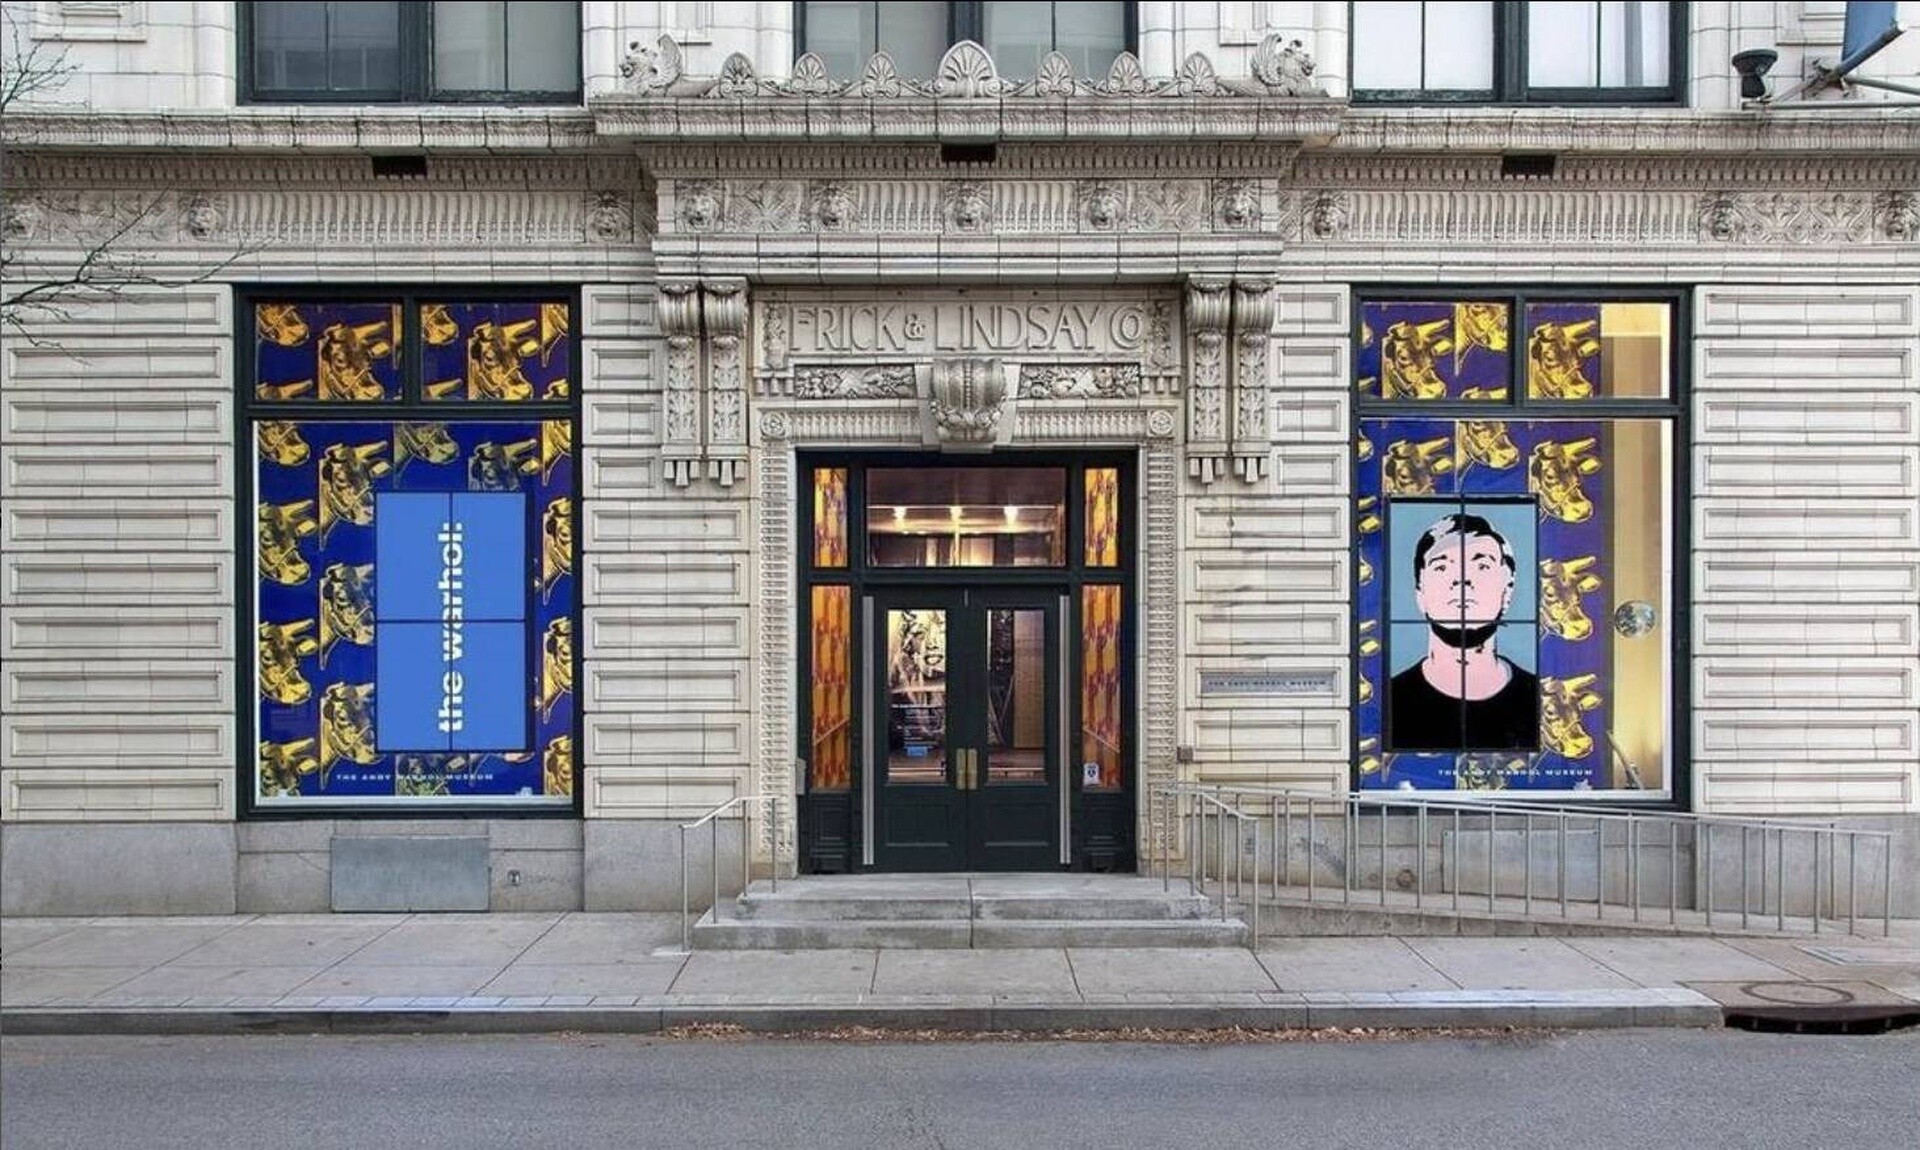 Έργα του Andy Warhol και του KAWS θα εκτεθούν μαζί για πρώτη φορά